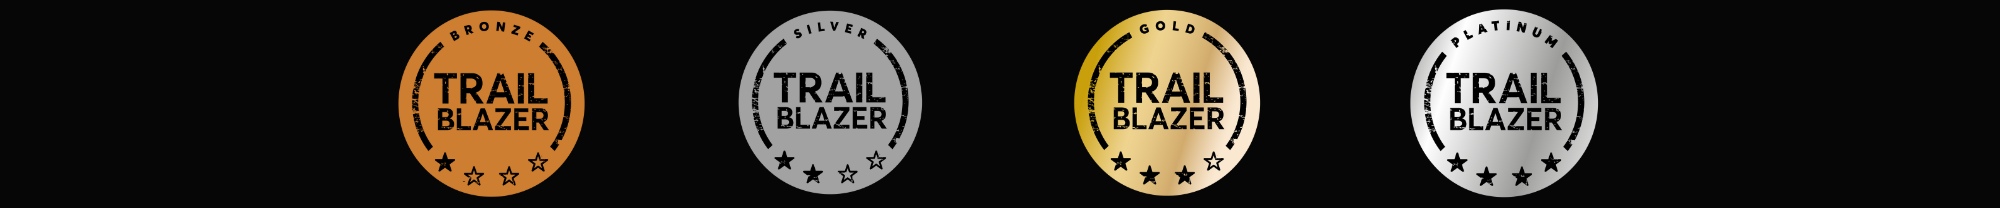 4x Trailblazer medals on black background